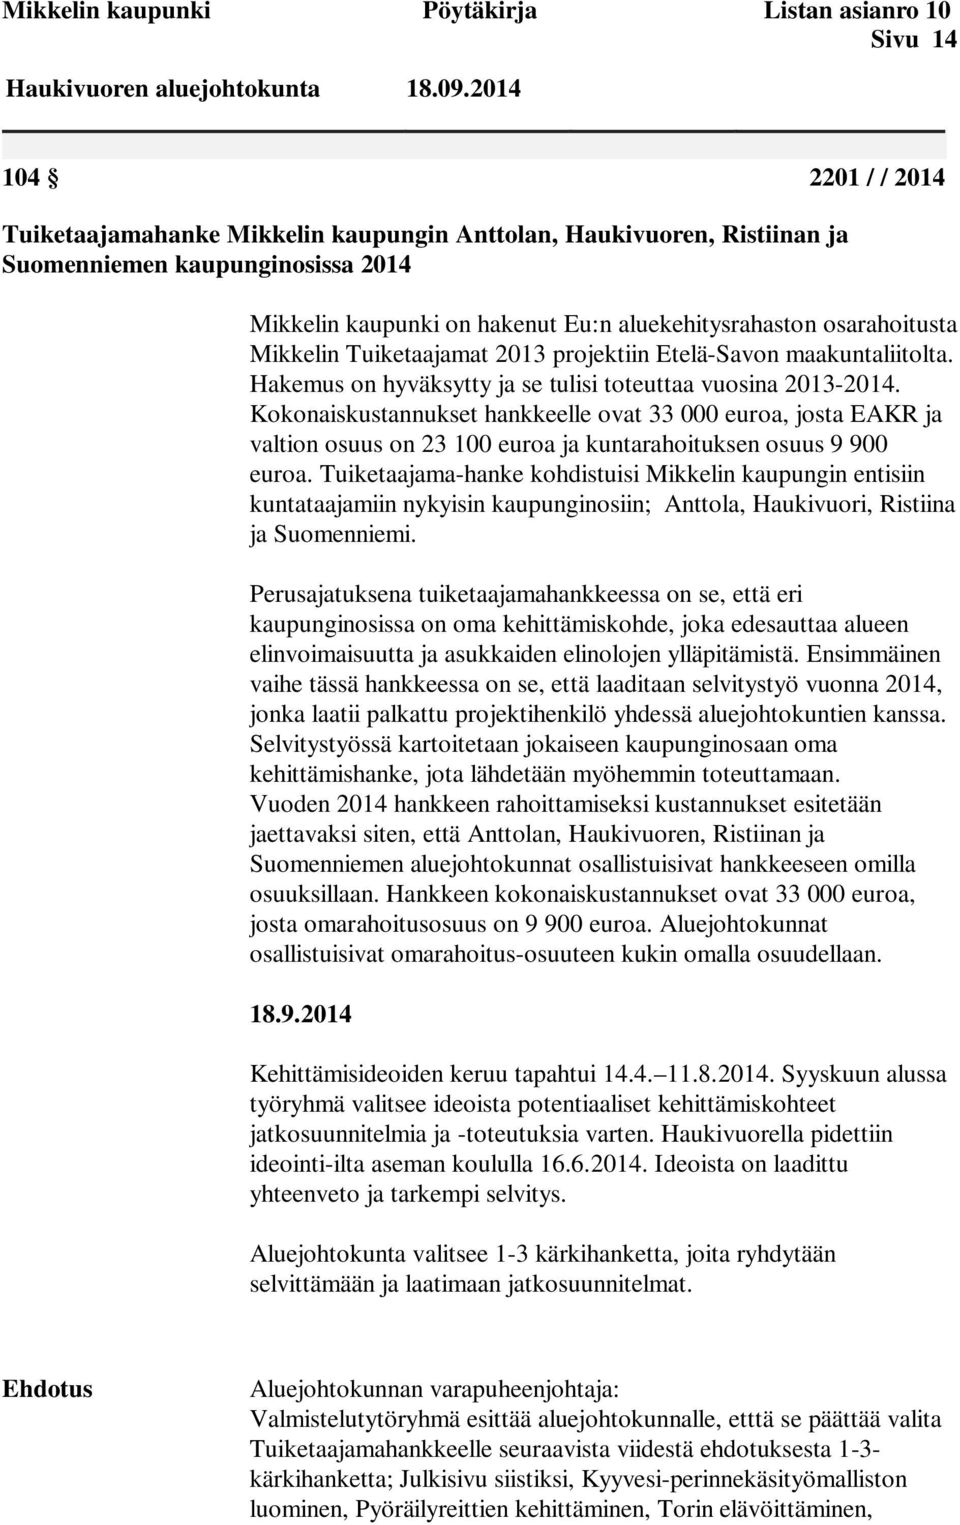 Mikkelin Tuiketaajamat 2013 projektiin Etelä-Savon maakuntaliitolta. Hakemus on hyväksytty ja se tulisi toteuttaa vuosina 2013-2014.